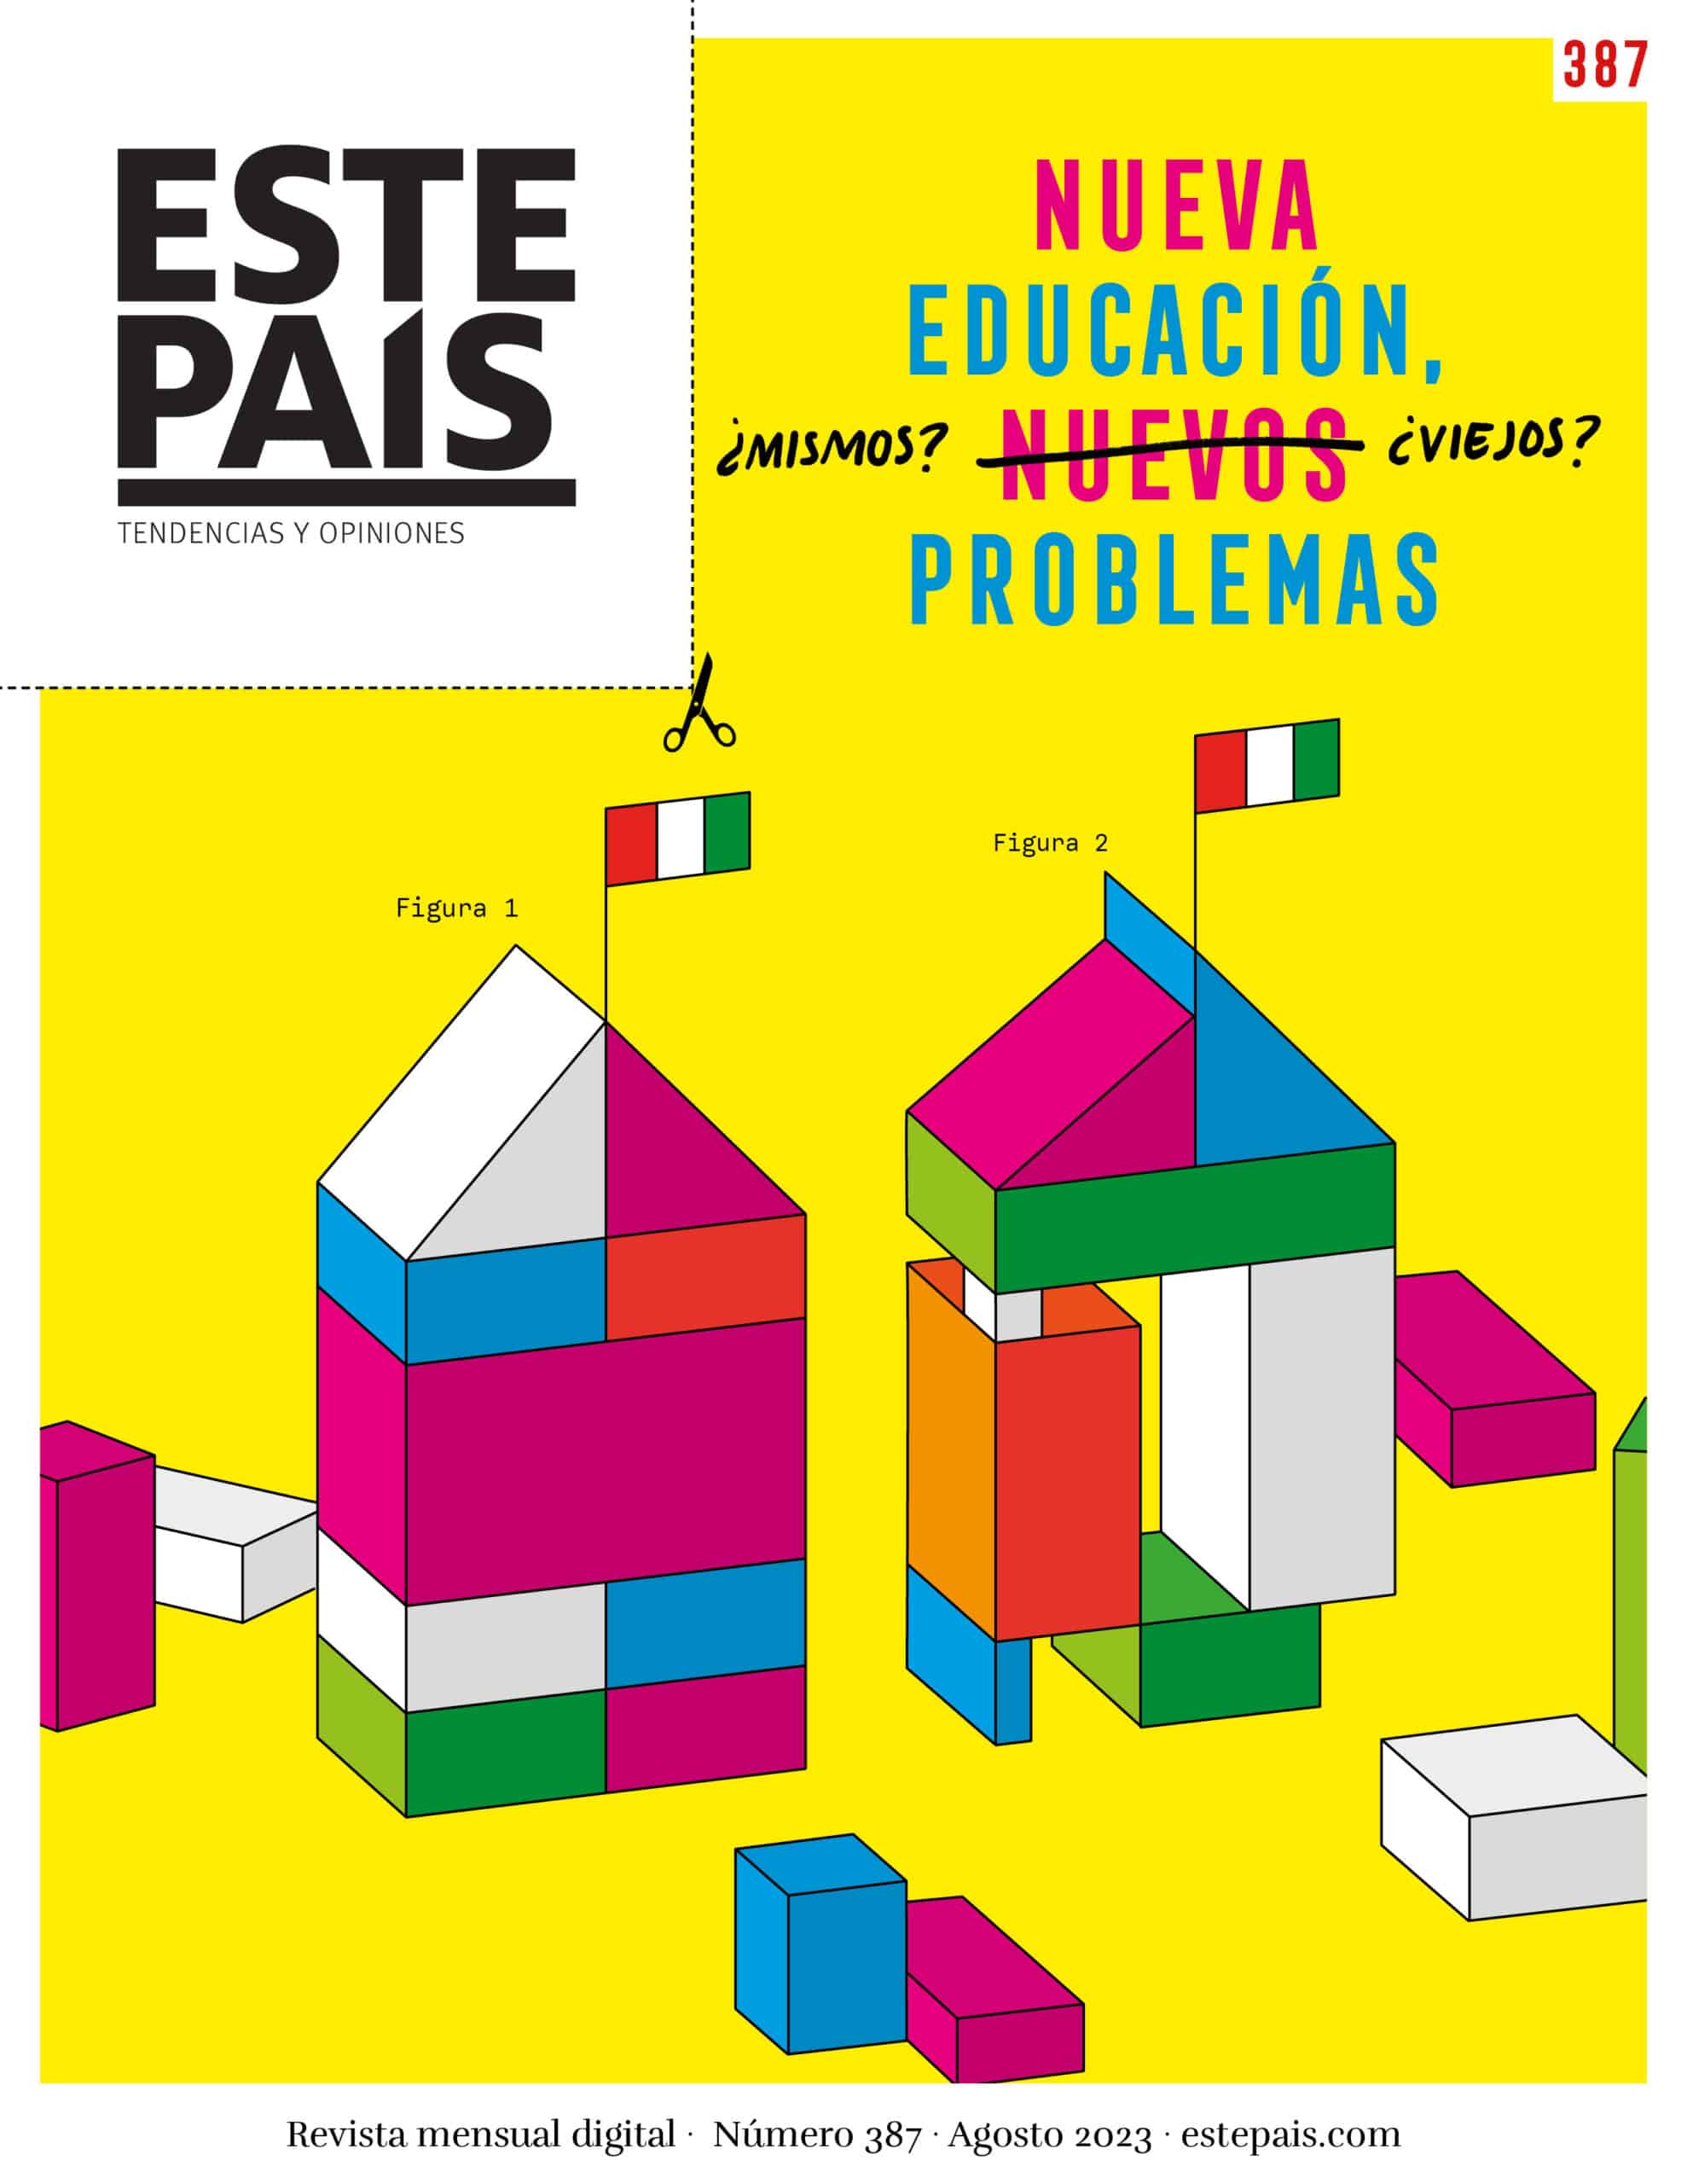 Portada de la revista Este País, número 387. Nueva educación, nuevos problemas.